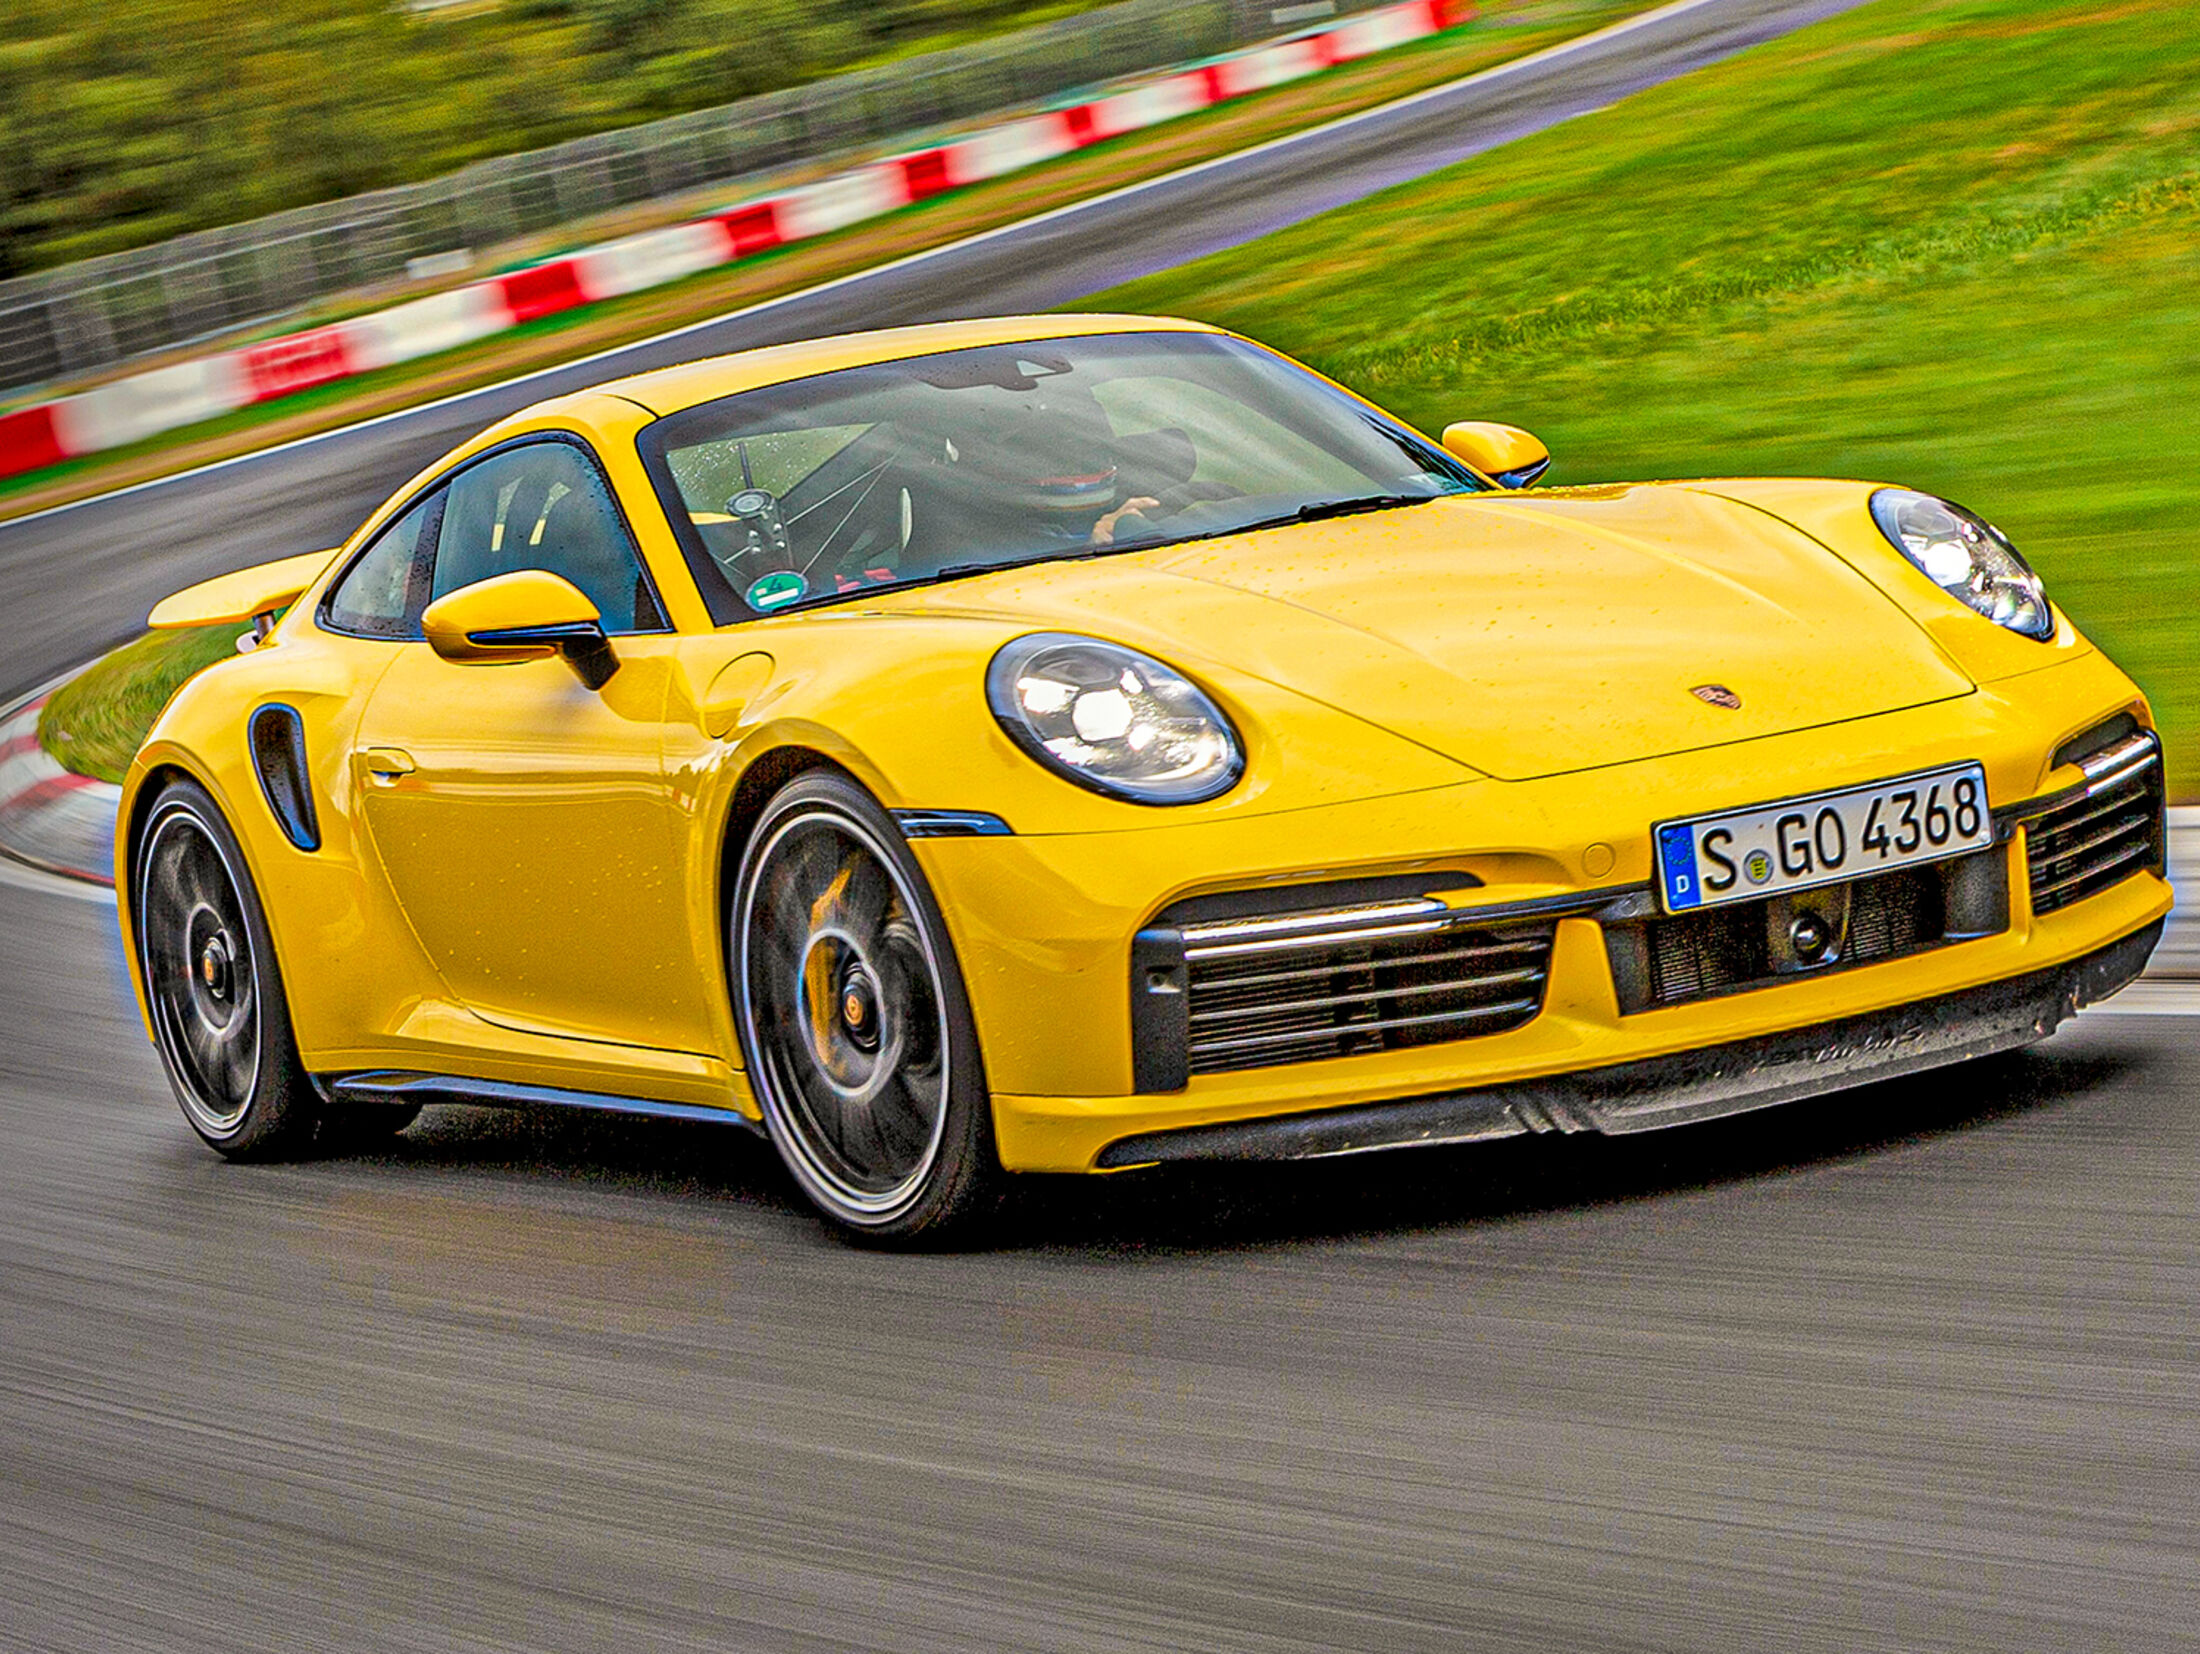 Für jeden Tag und für besondere Tage: Test: Porsche 911 Turbo S - WELT